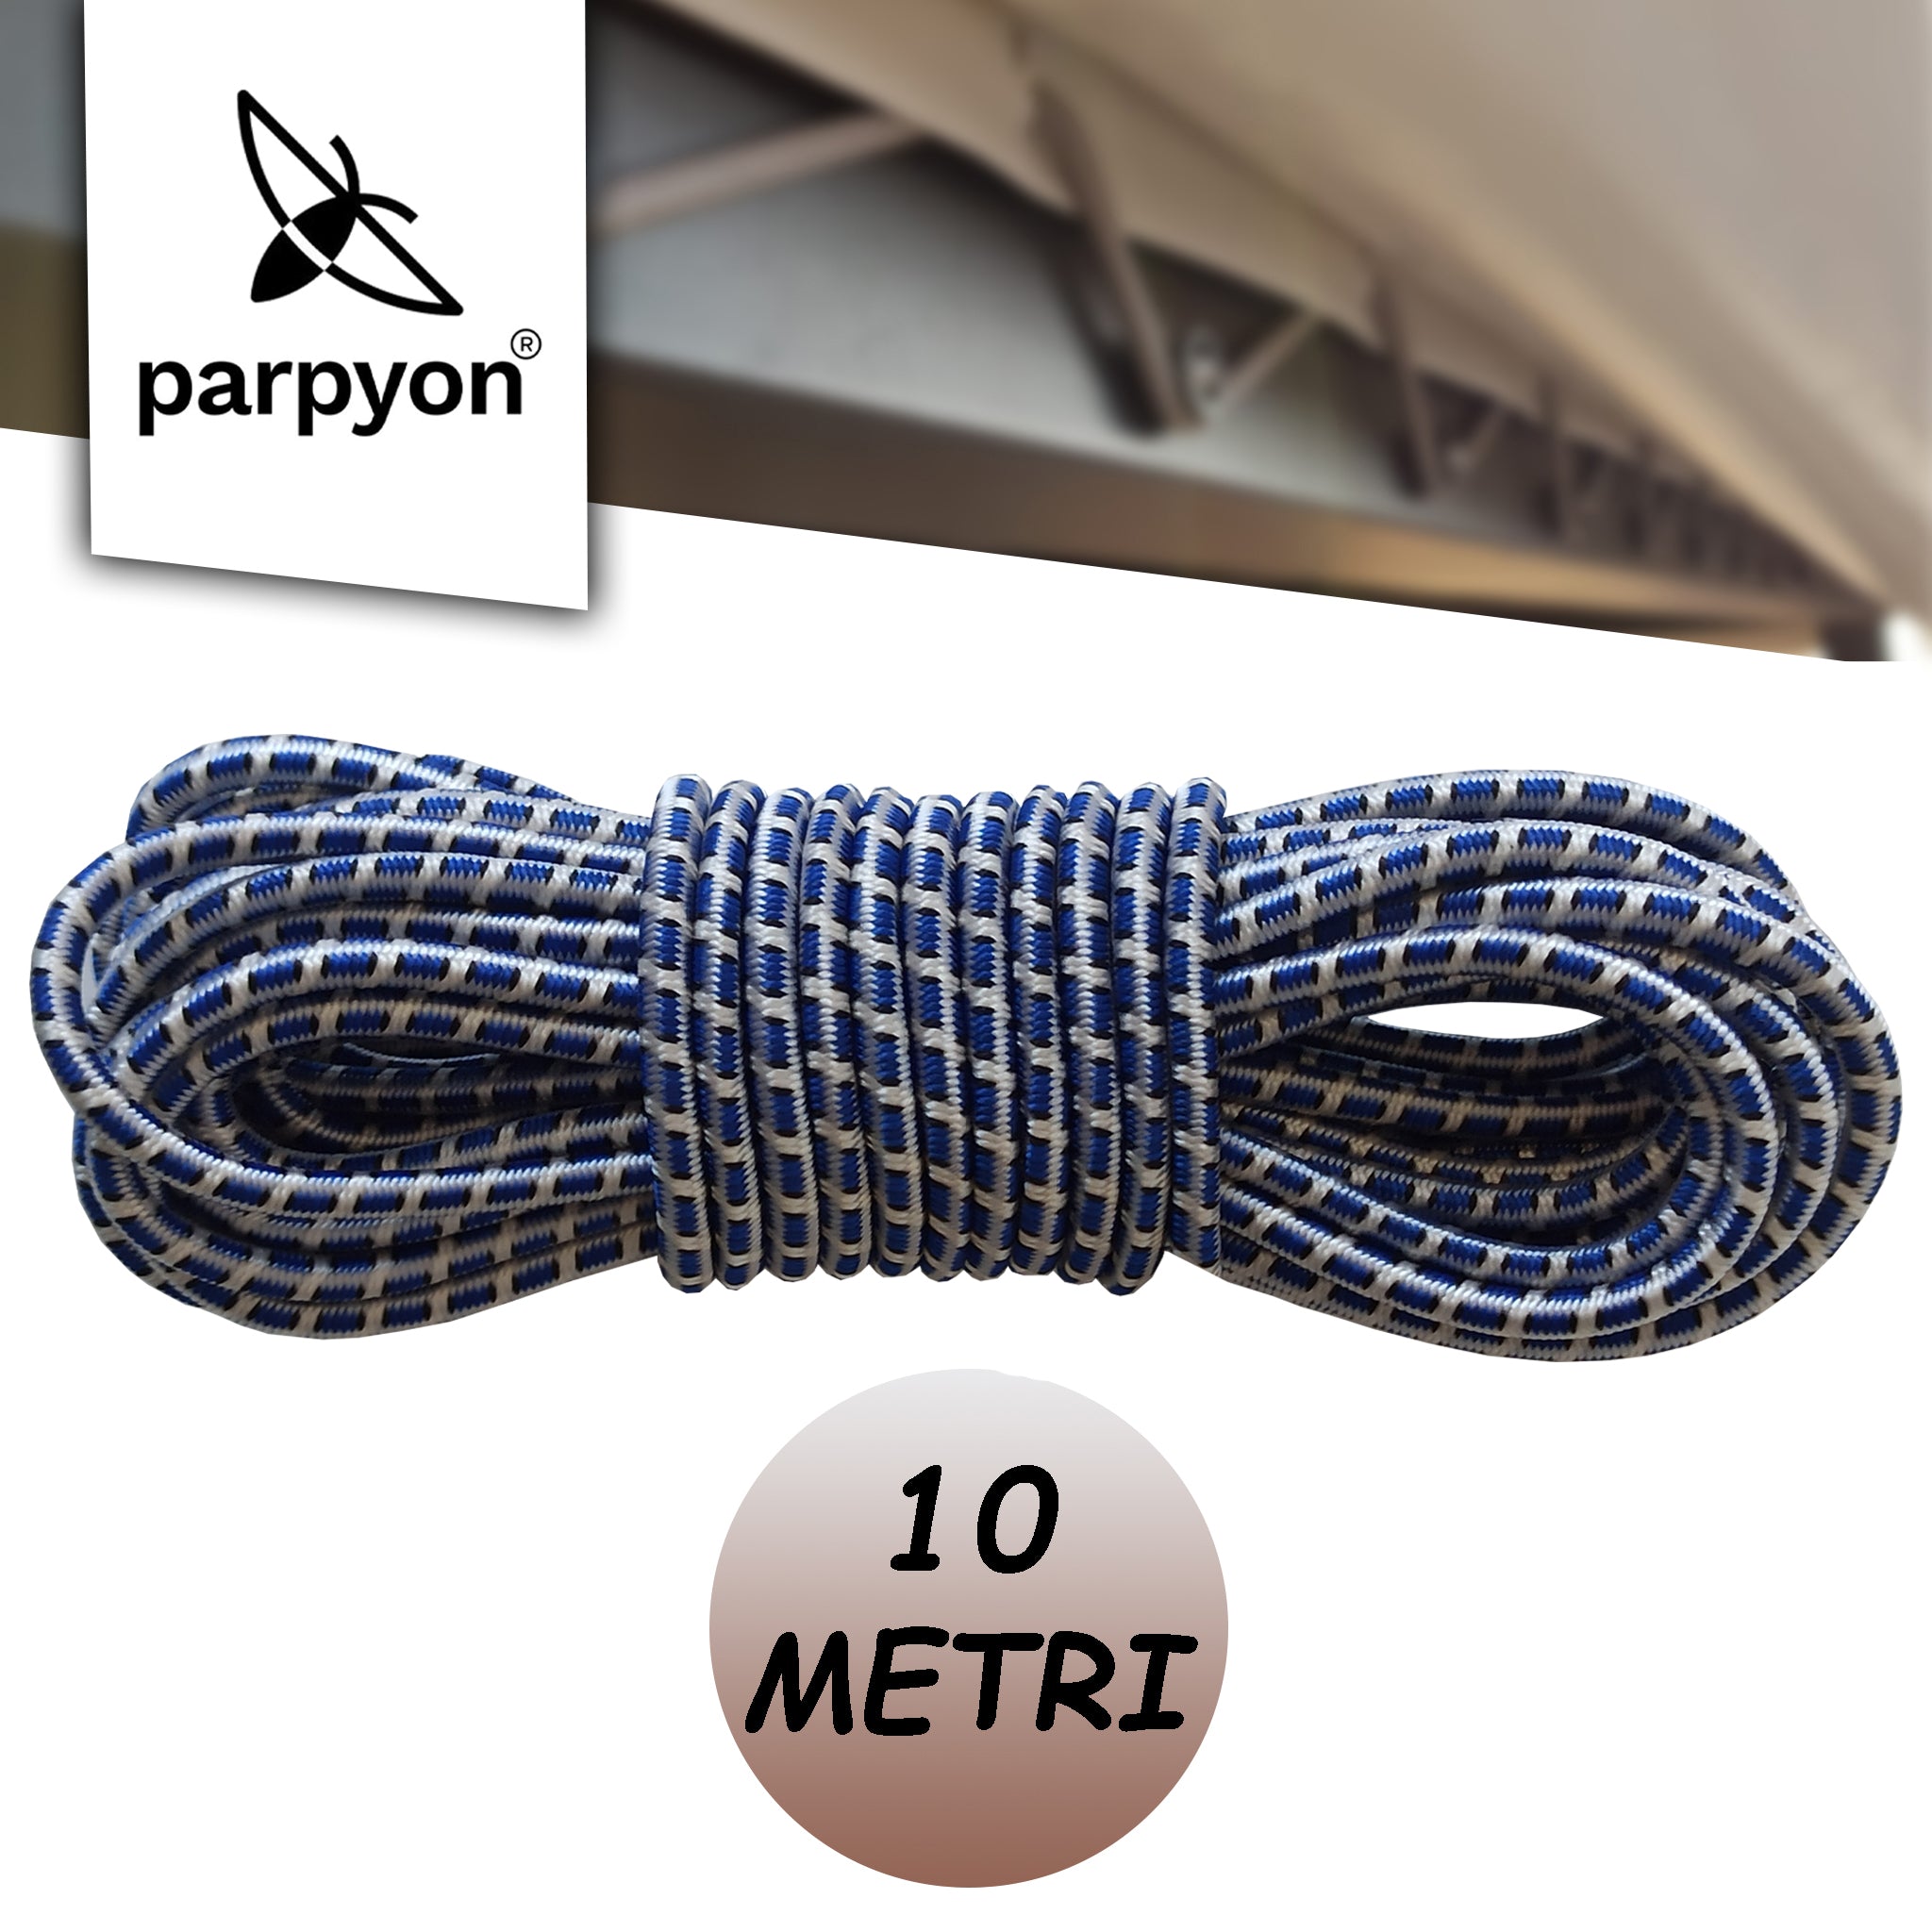 Corda elastica per teloni ideale come cinghia di fissaggio